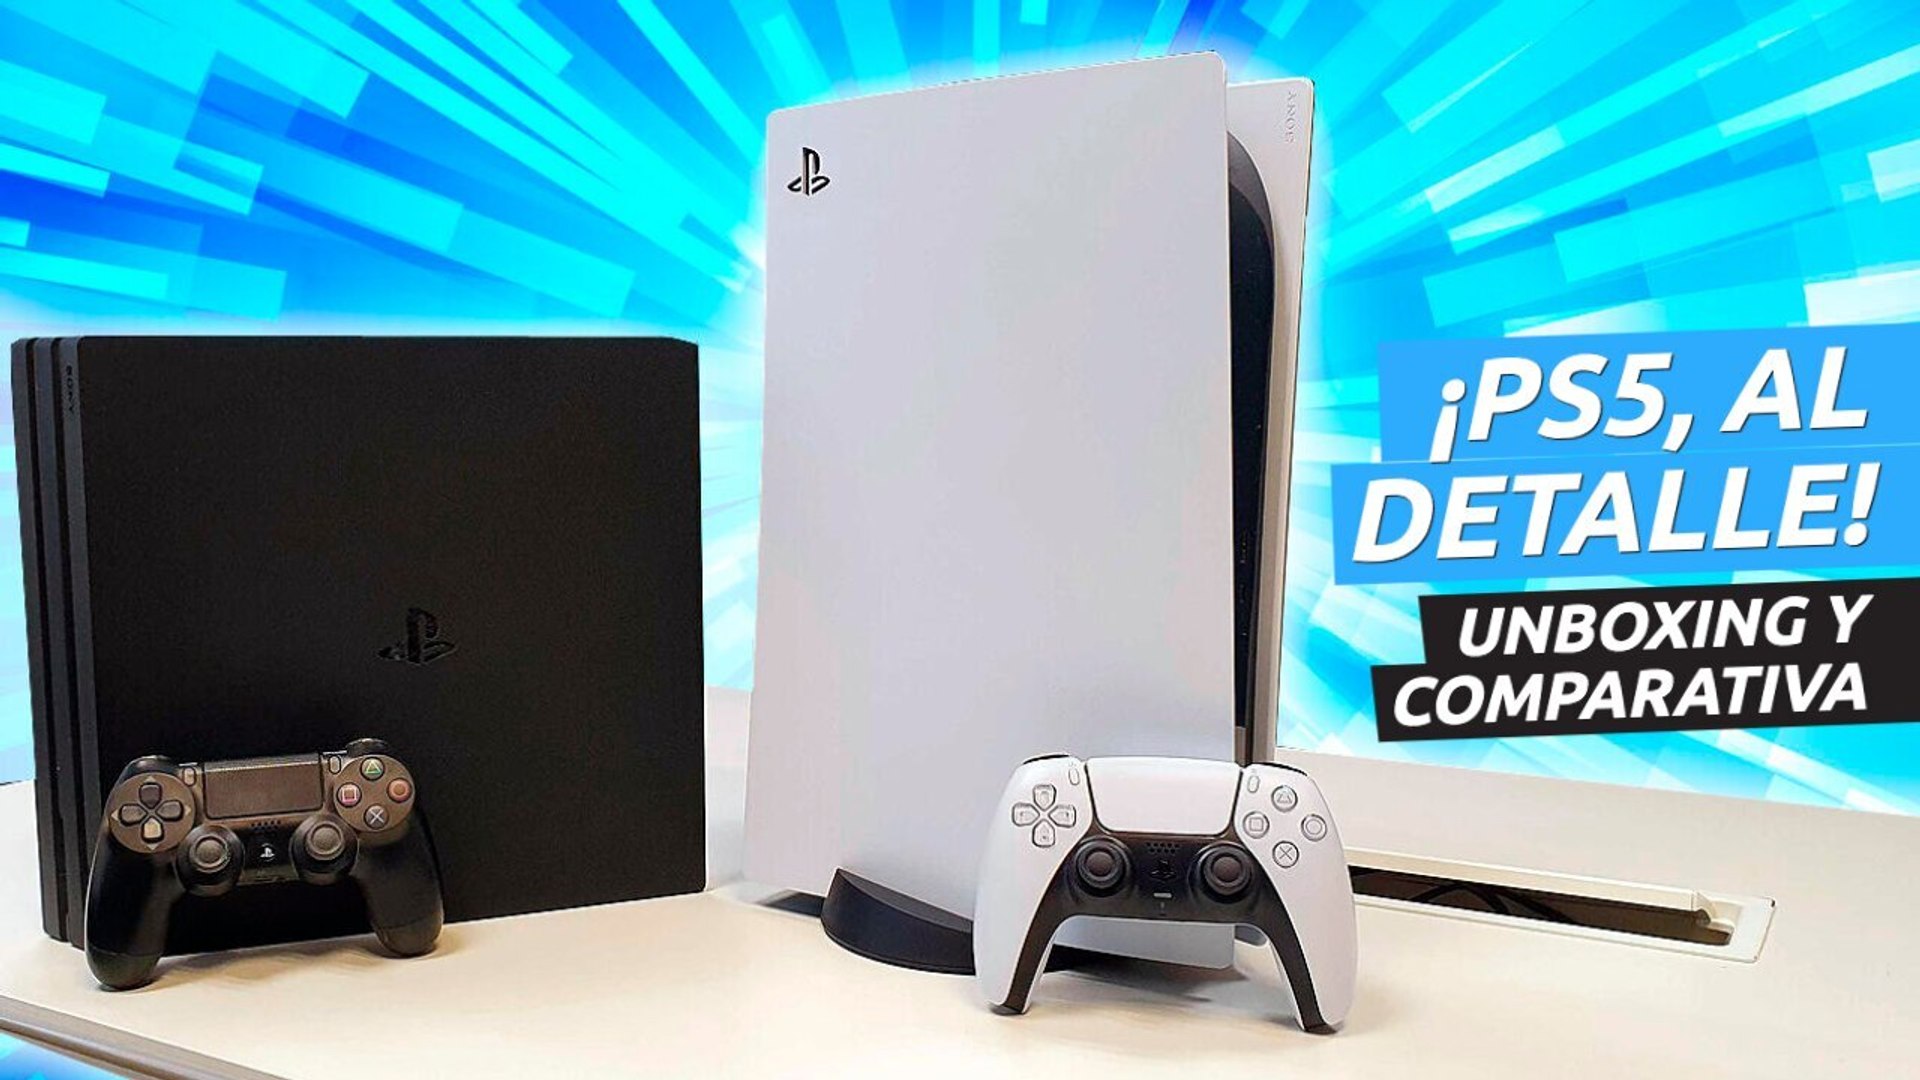 Unboxing de PlayStation 5 con TODOS los detalles y comparativa con PS4 Pro  - Vídeo Dailymotion